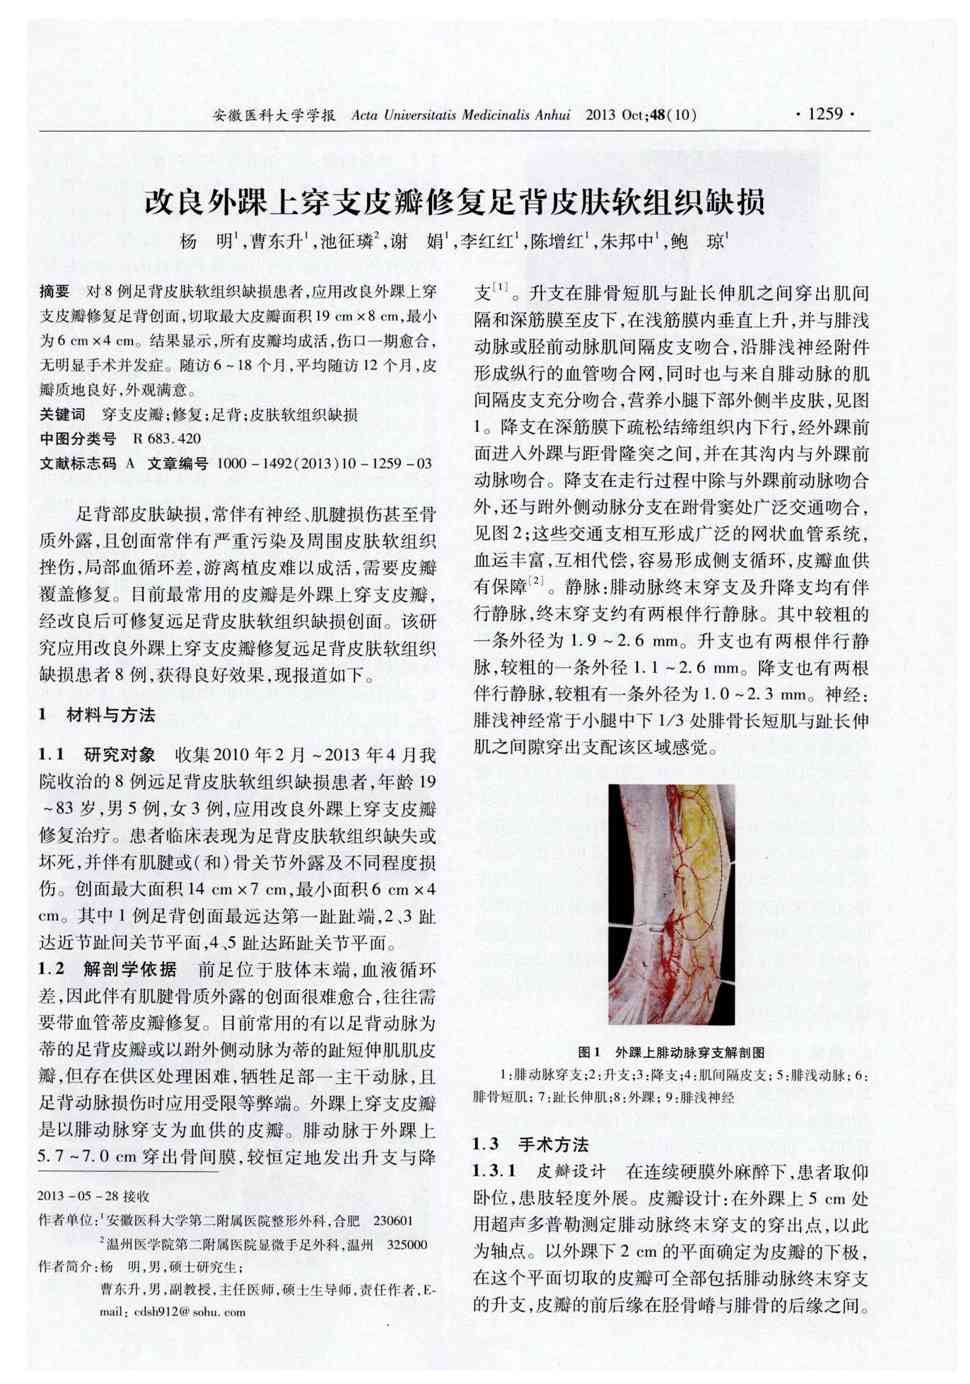 期刊改良外踝上穿支皮瓣修复足背皮肤软组织缺损被引量:6